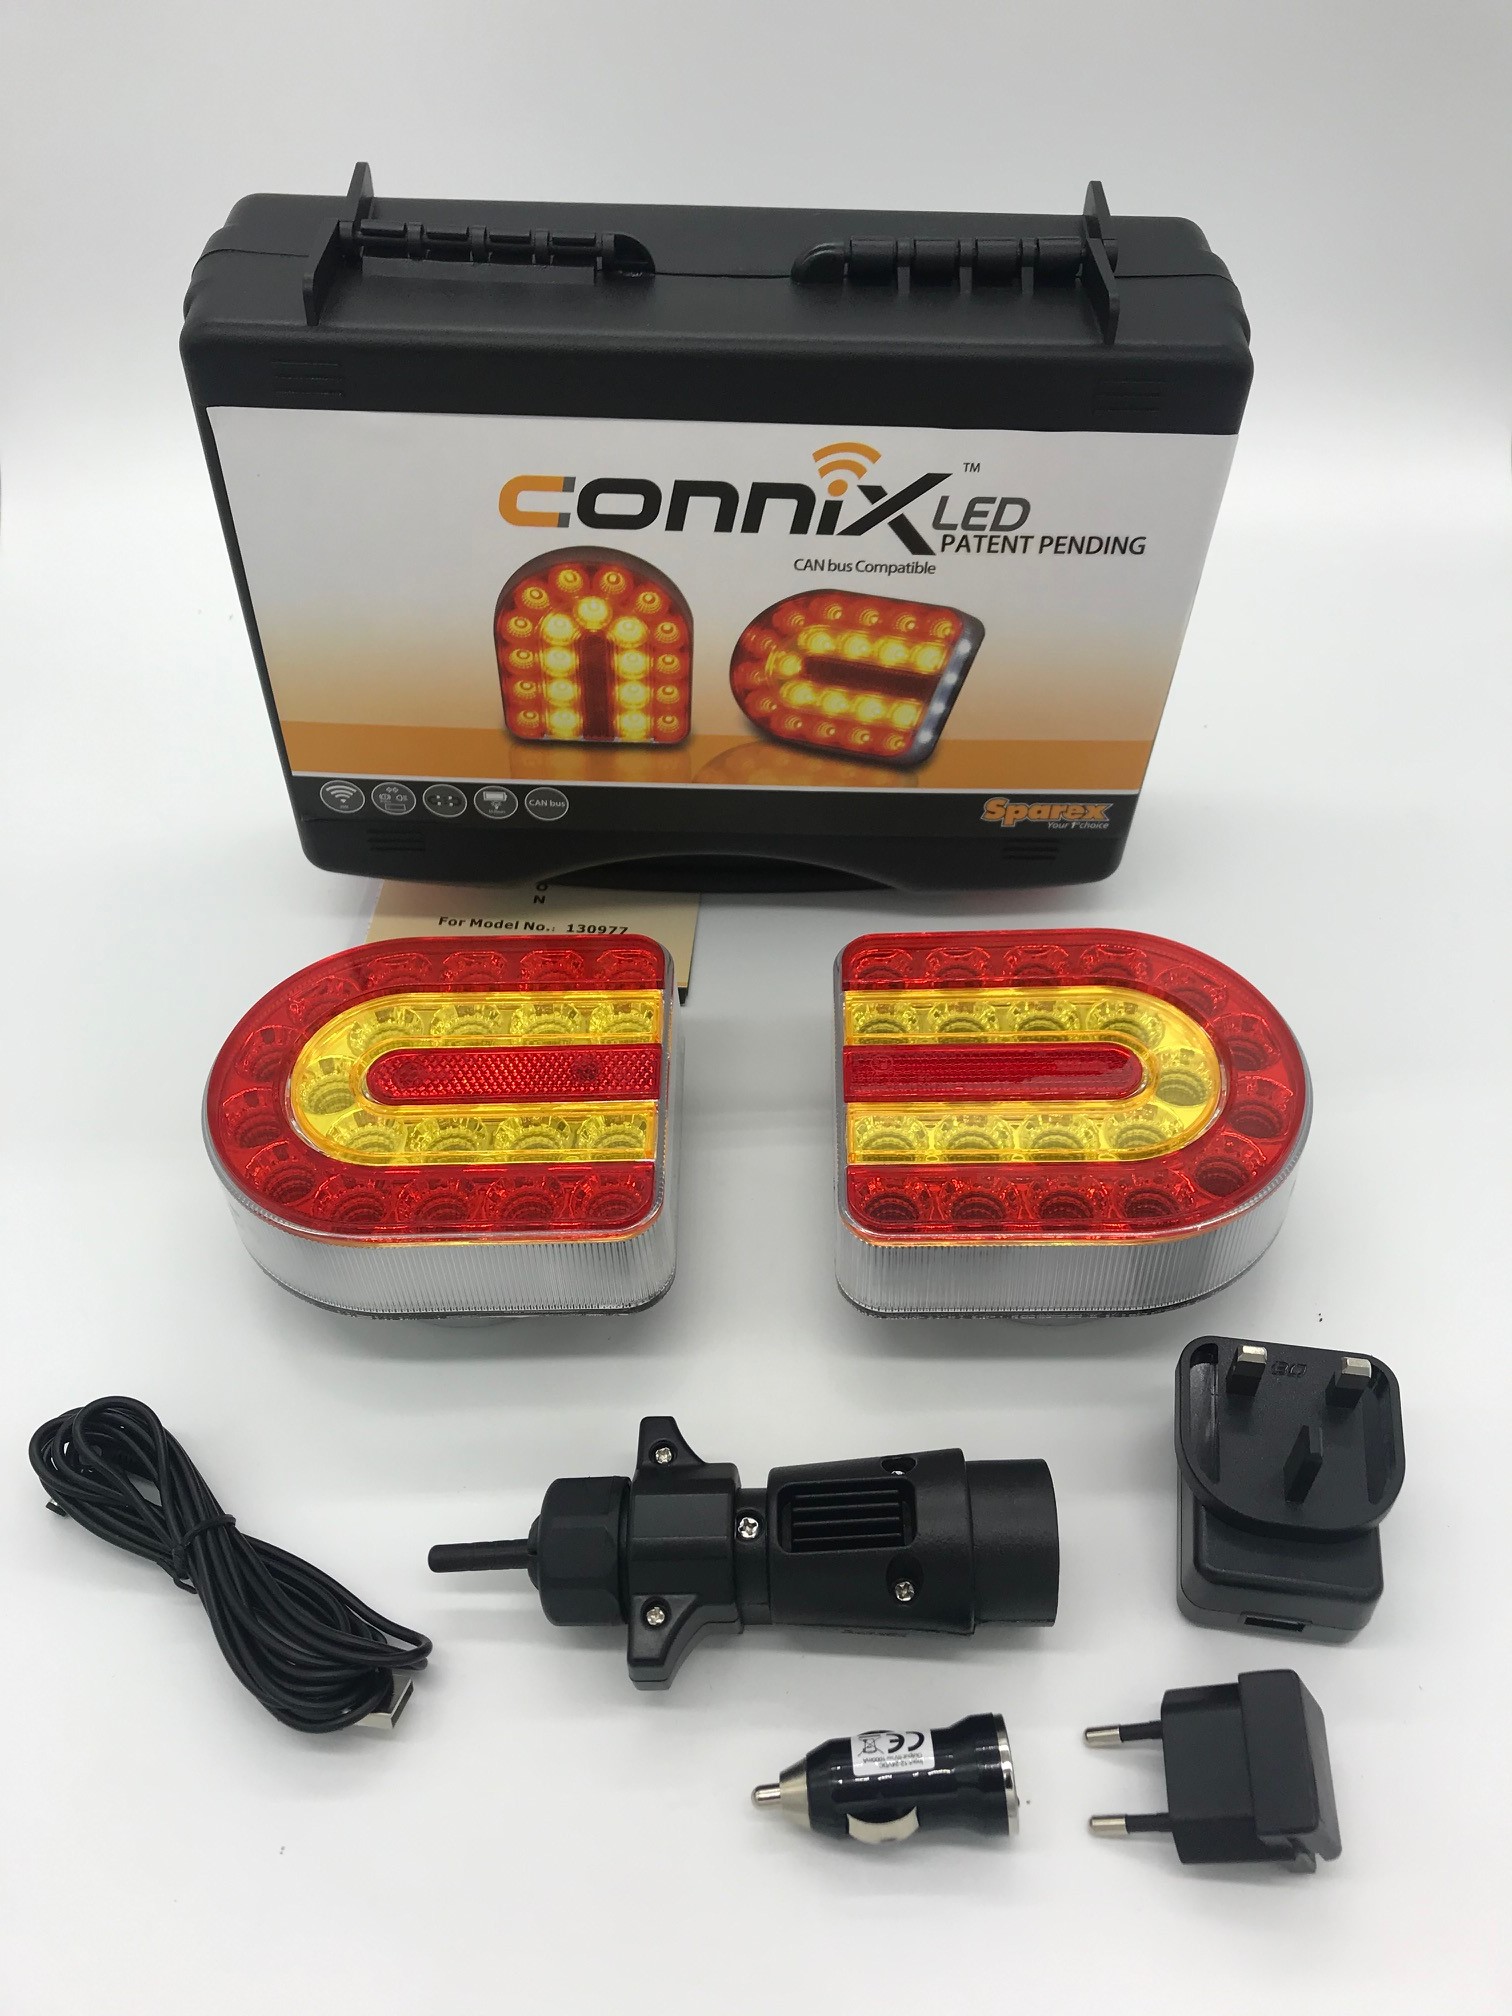 Connix CAN BUS fähig Leuchtensatz kabellos Funk Magnet Anhänger Leuchten  Rücklicht - Schlepperteile Spezialist Steyr Fendt Case IHC